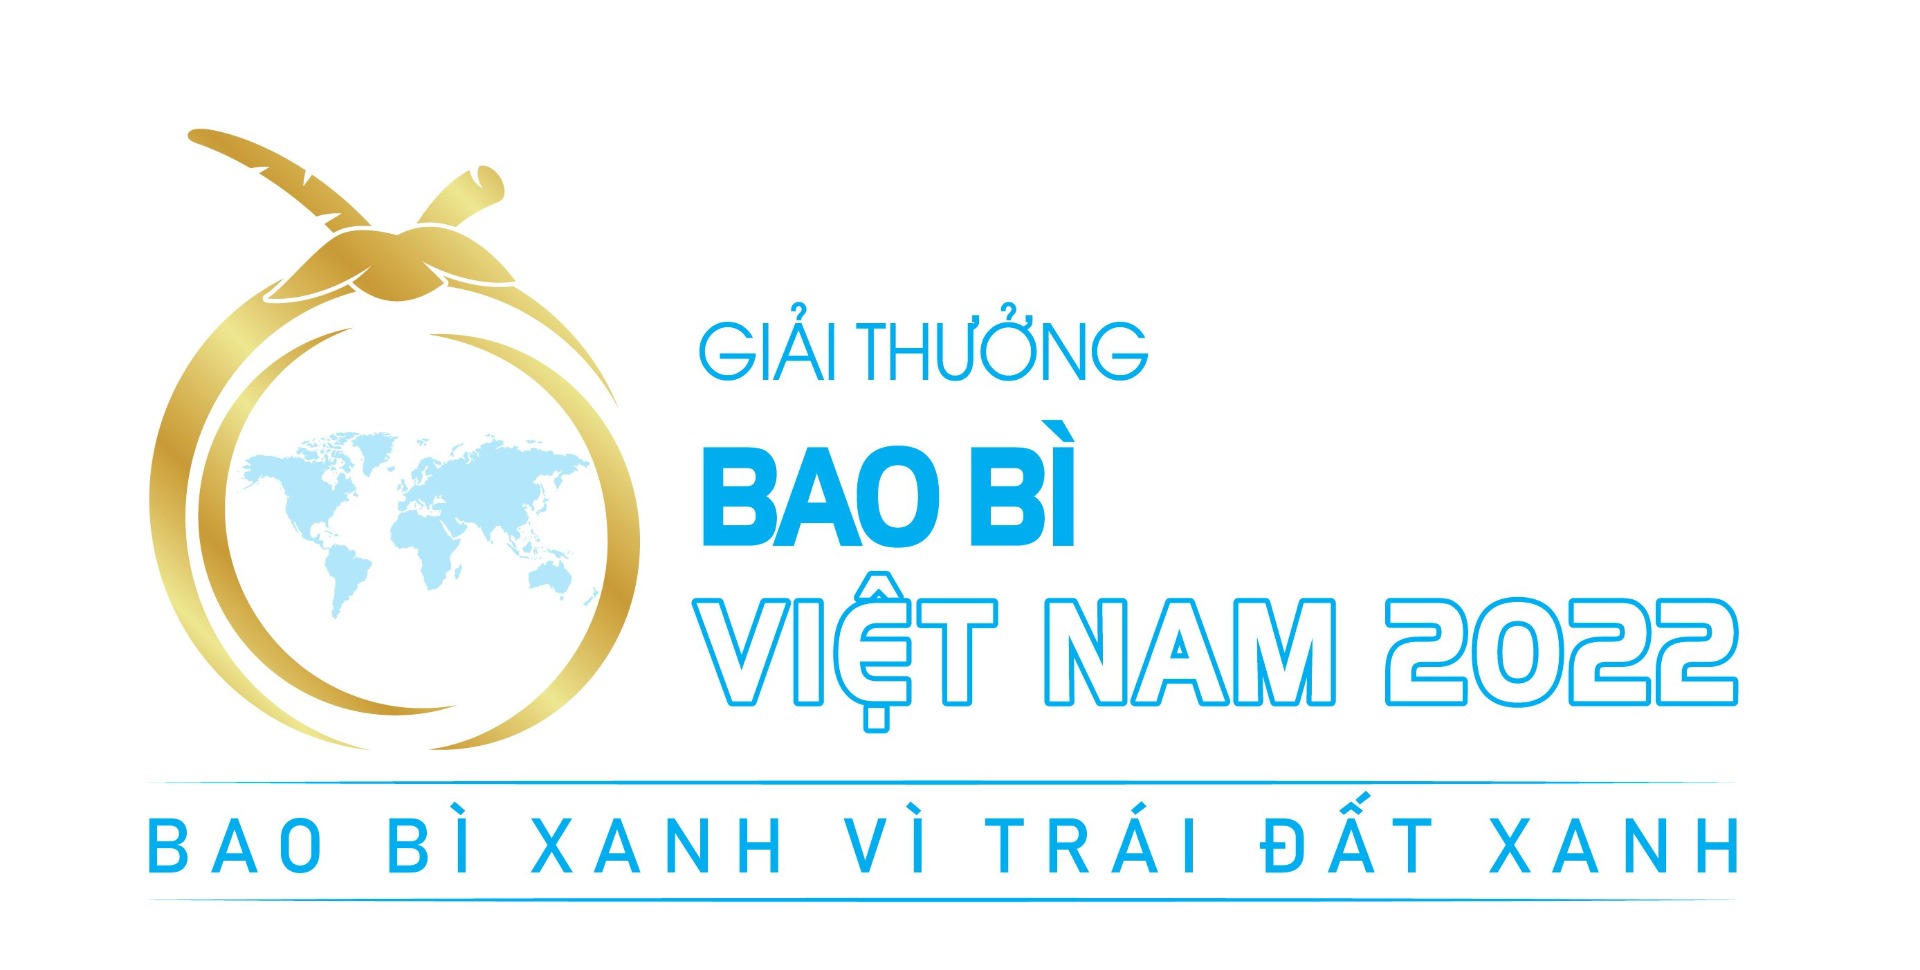 Giải thưởng Bao Bì Việt Nam 2022 - Bao bì xanh vì Trái Đất xanh